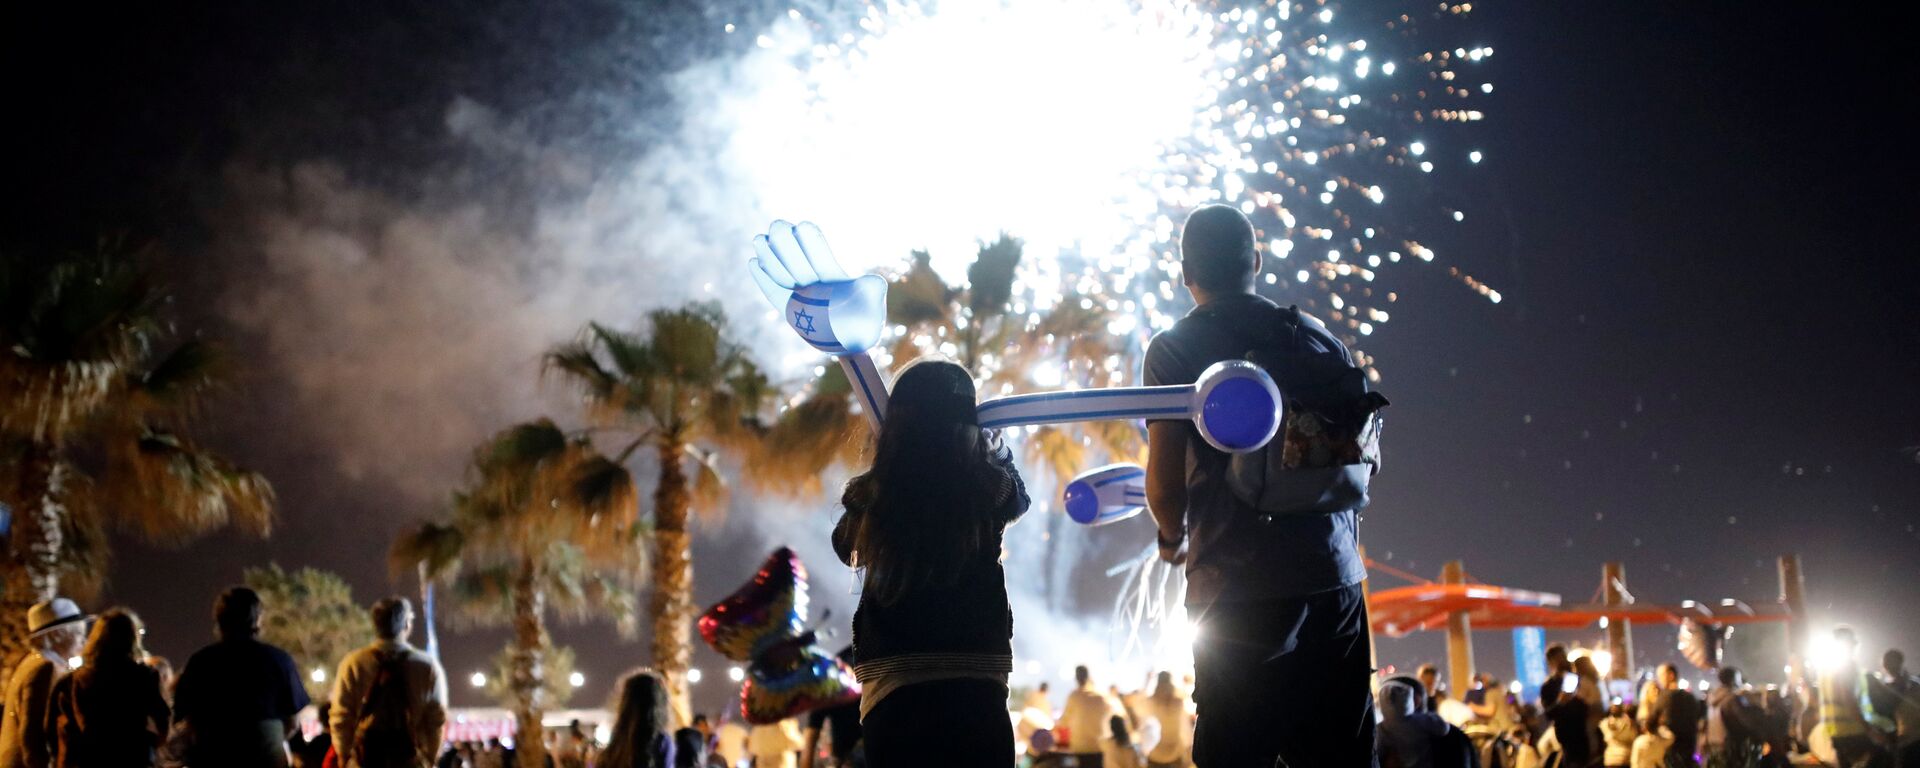 Los israelíes asisten a un espectáculo de fuegos artificiales durante las celebraciones que marcan el 69º Día de la Independencia de Israel en la ciudad sureña de Ashkelon, Israel, el 1 de mayo de 2017 - Sputnik Mundo, 1920, 06.04.2022